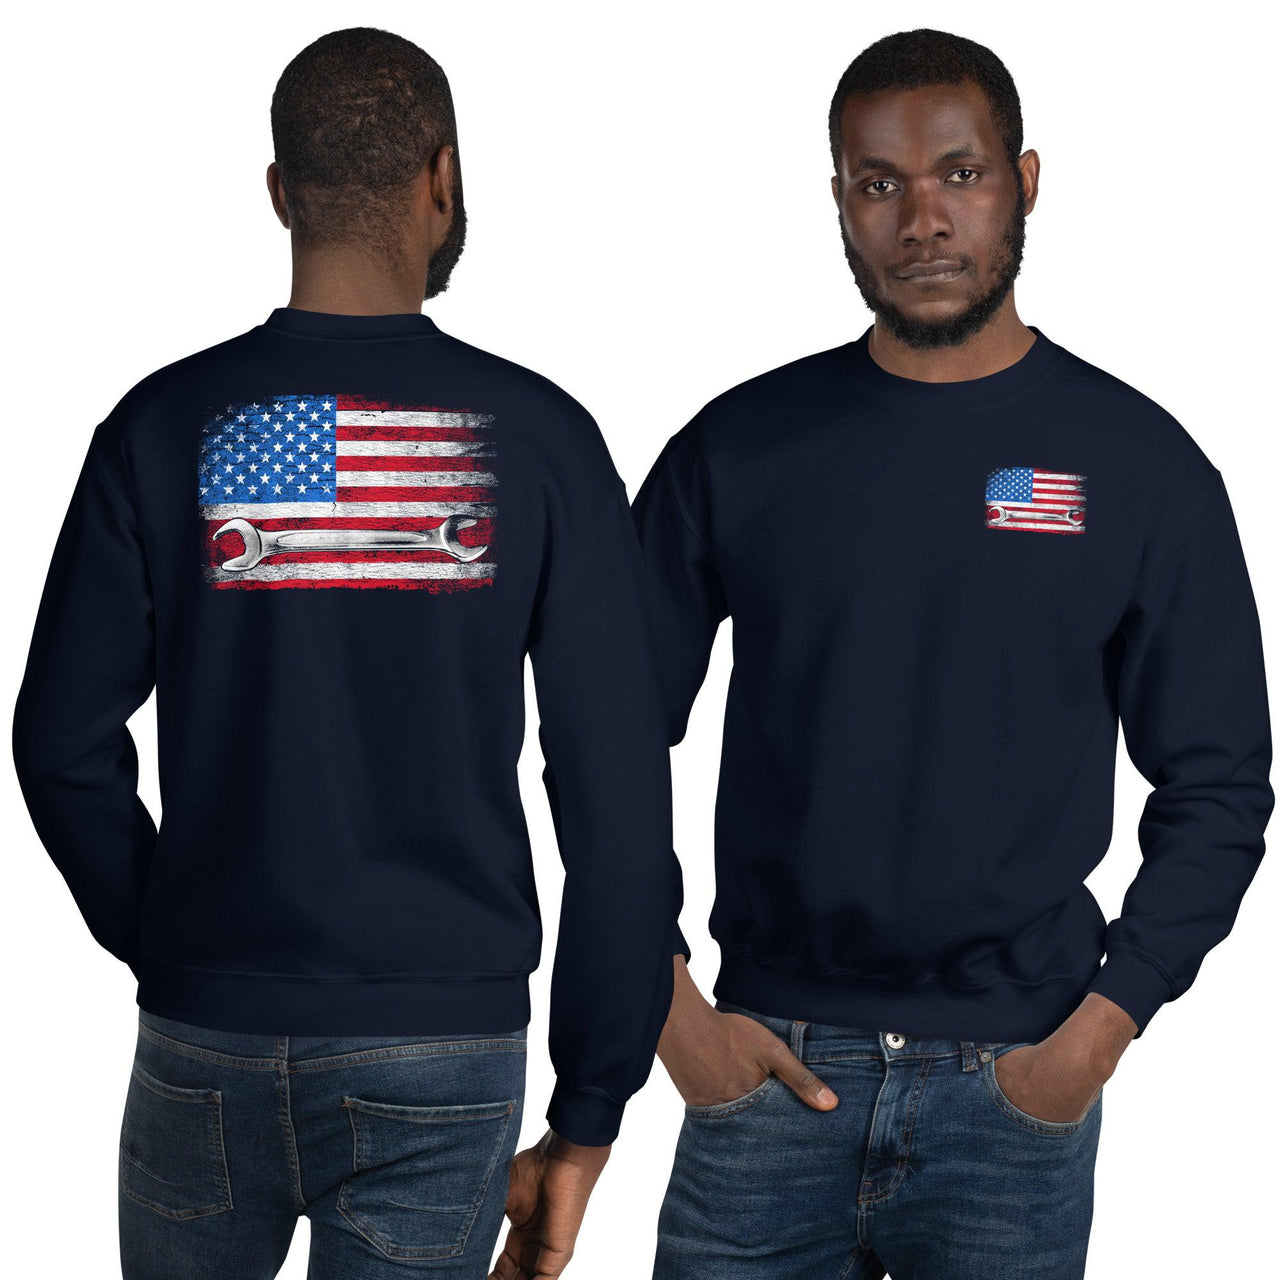 Mechanic Crew Neck Sweatshirt modeled in navy